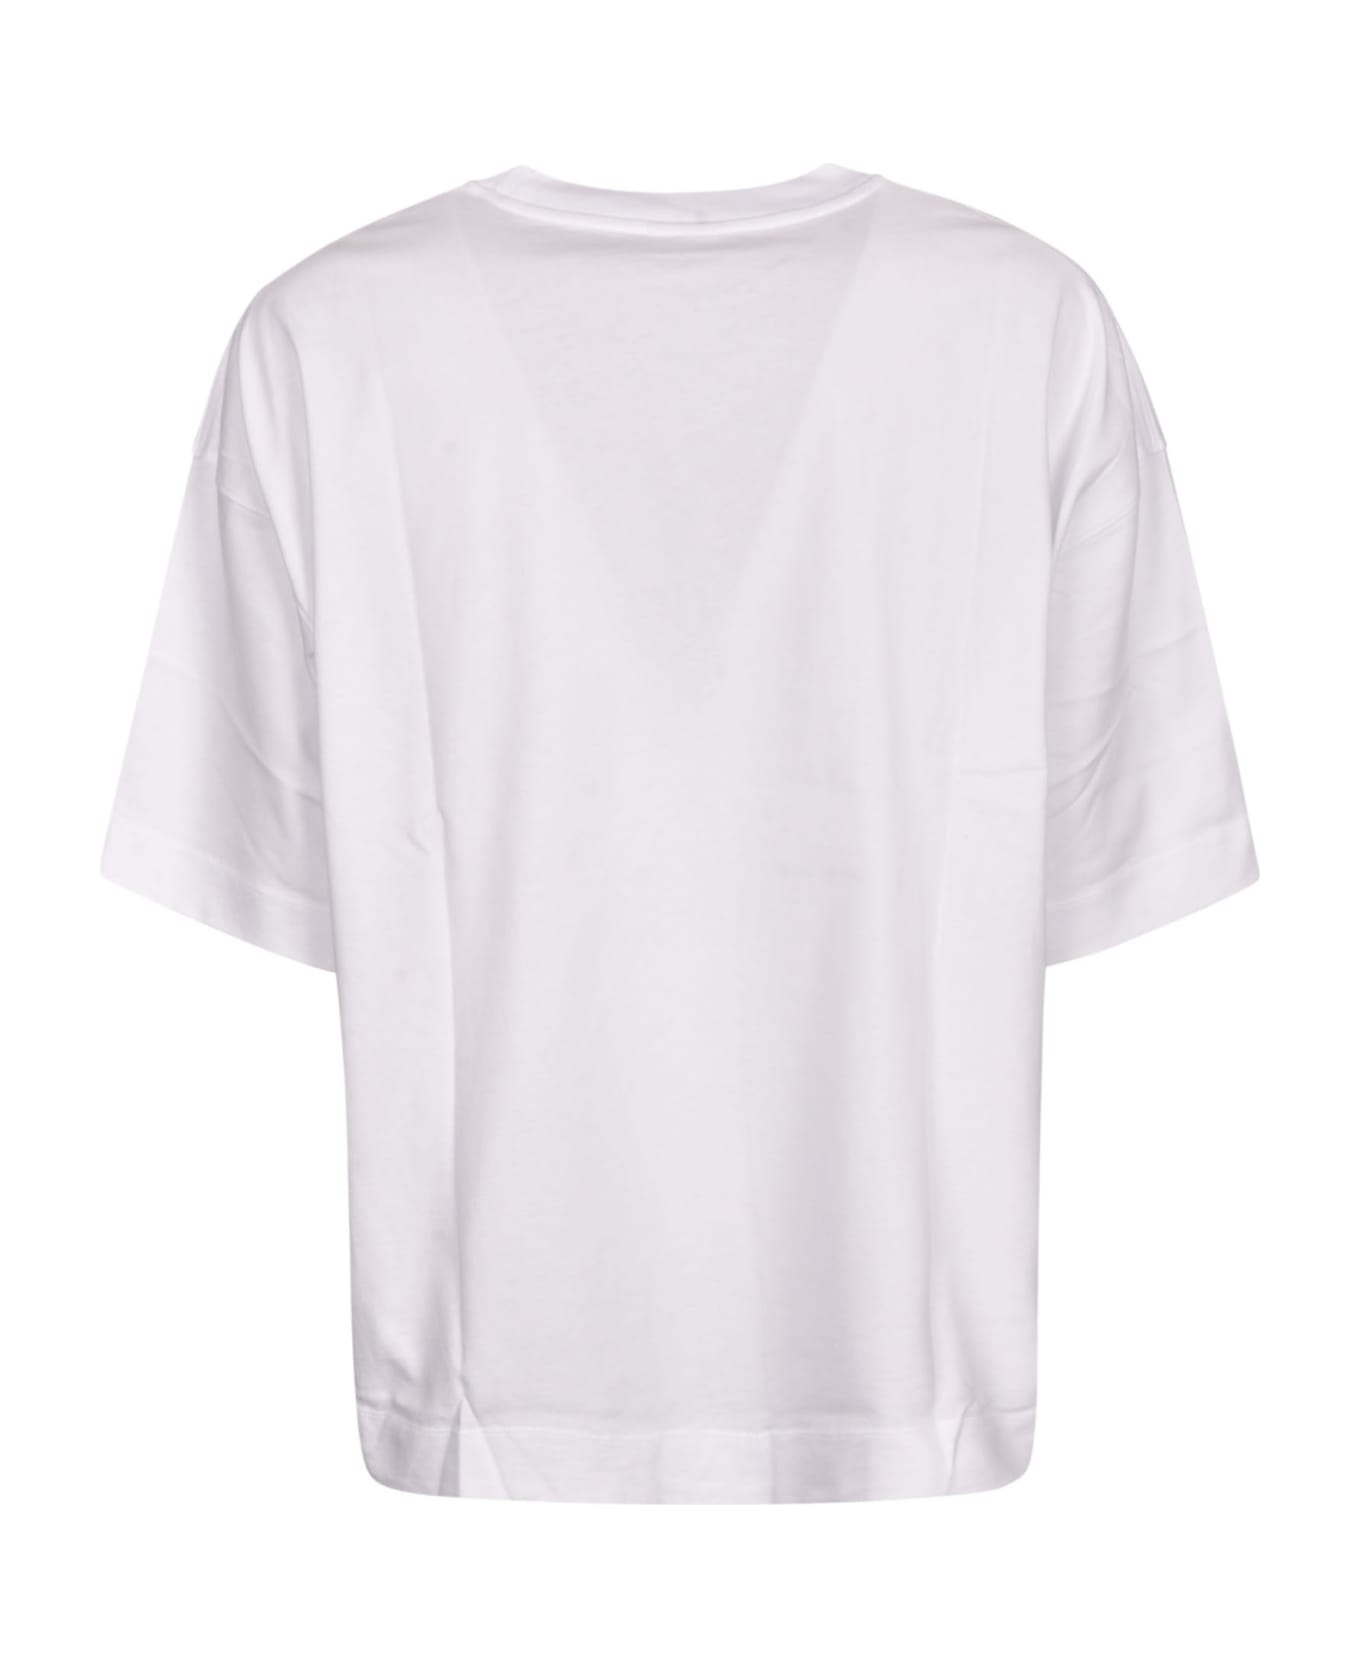 Dries Van Noten Round Neck T-shirt - White